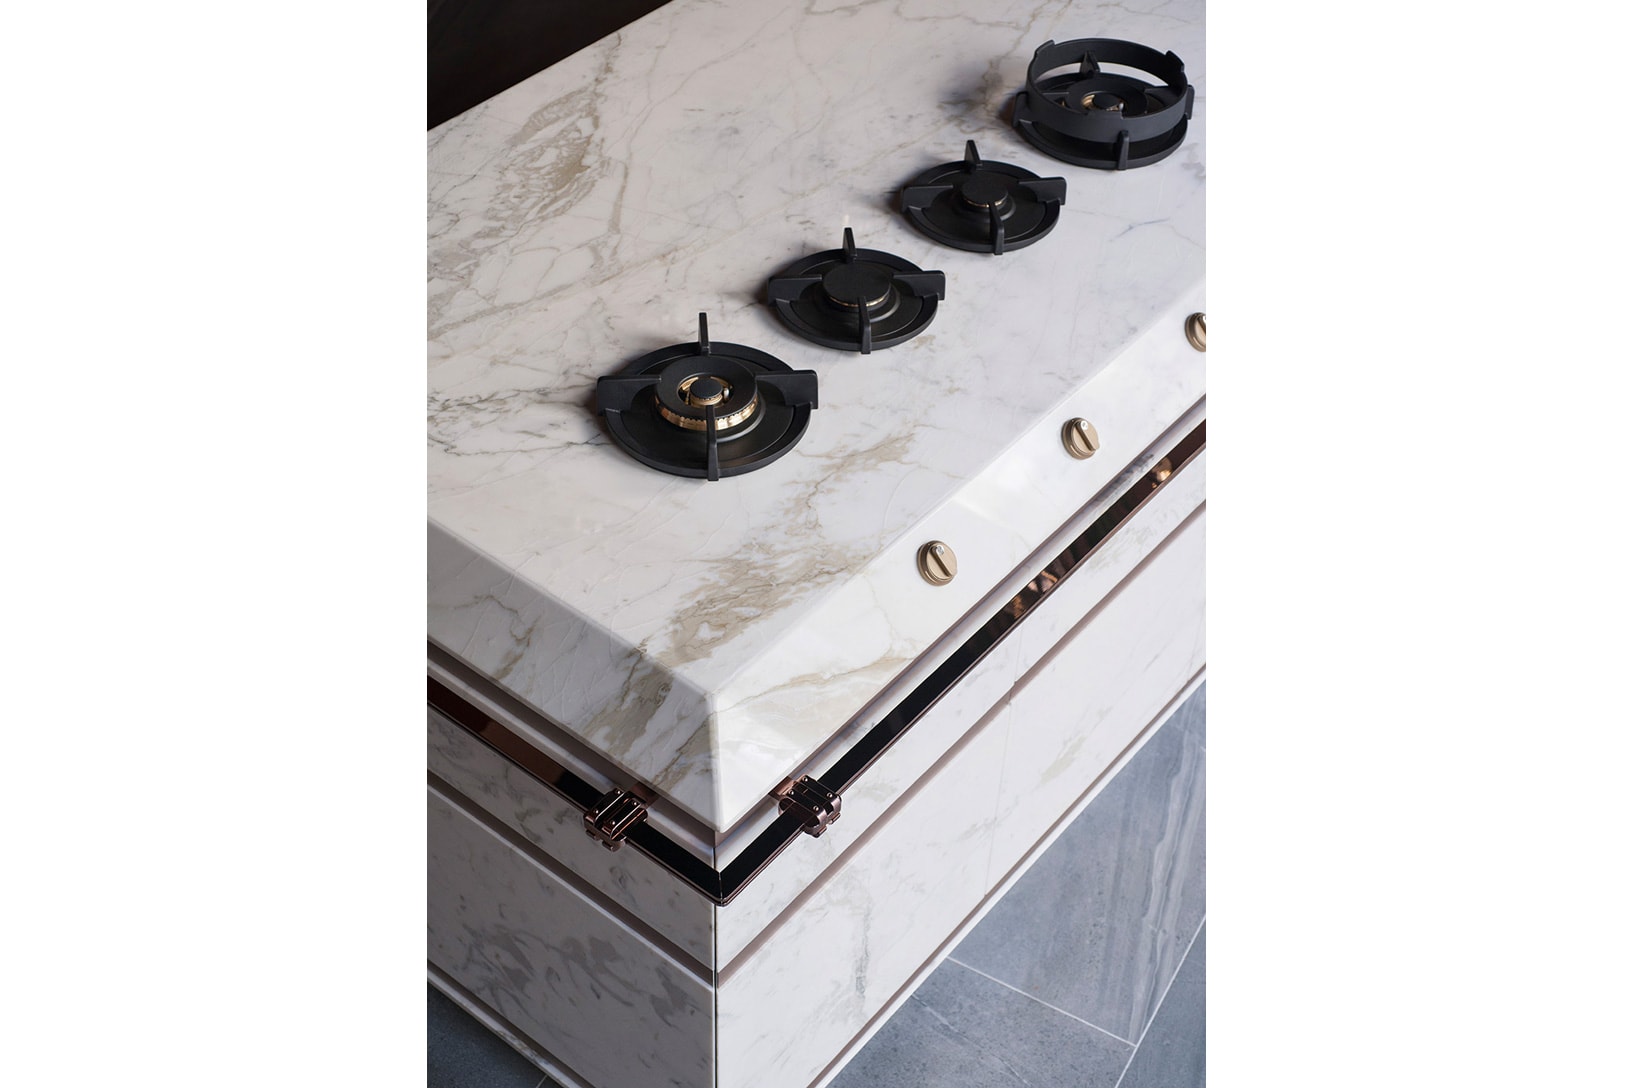 Fendi SCIC Fendi Cucine home Kitchen Collection interior design model price mateirals luxury